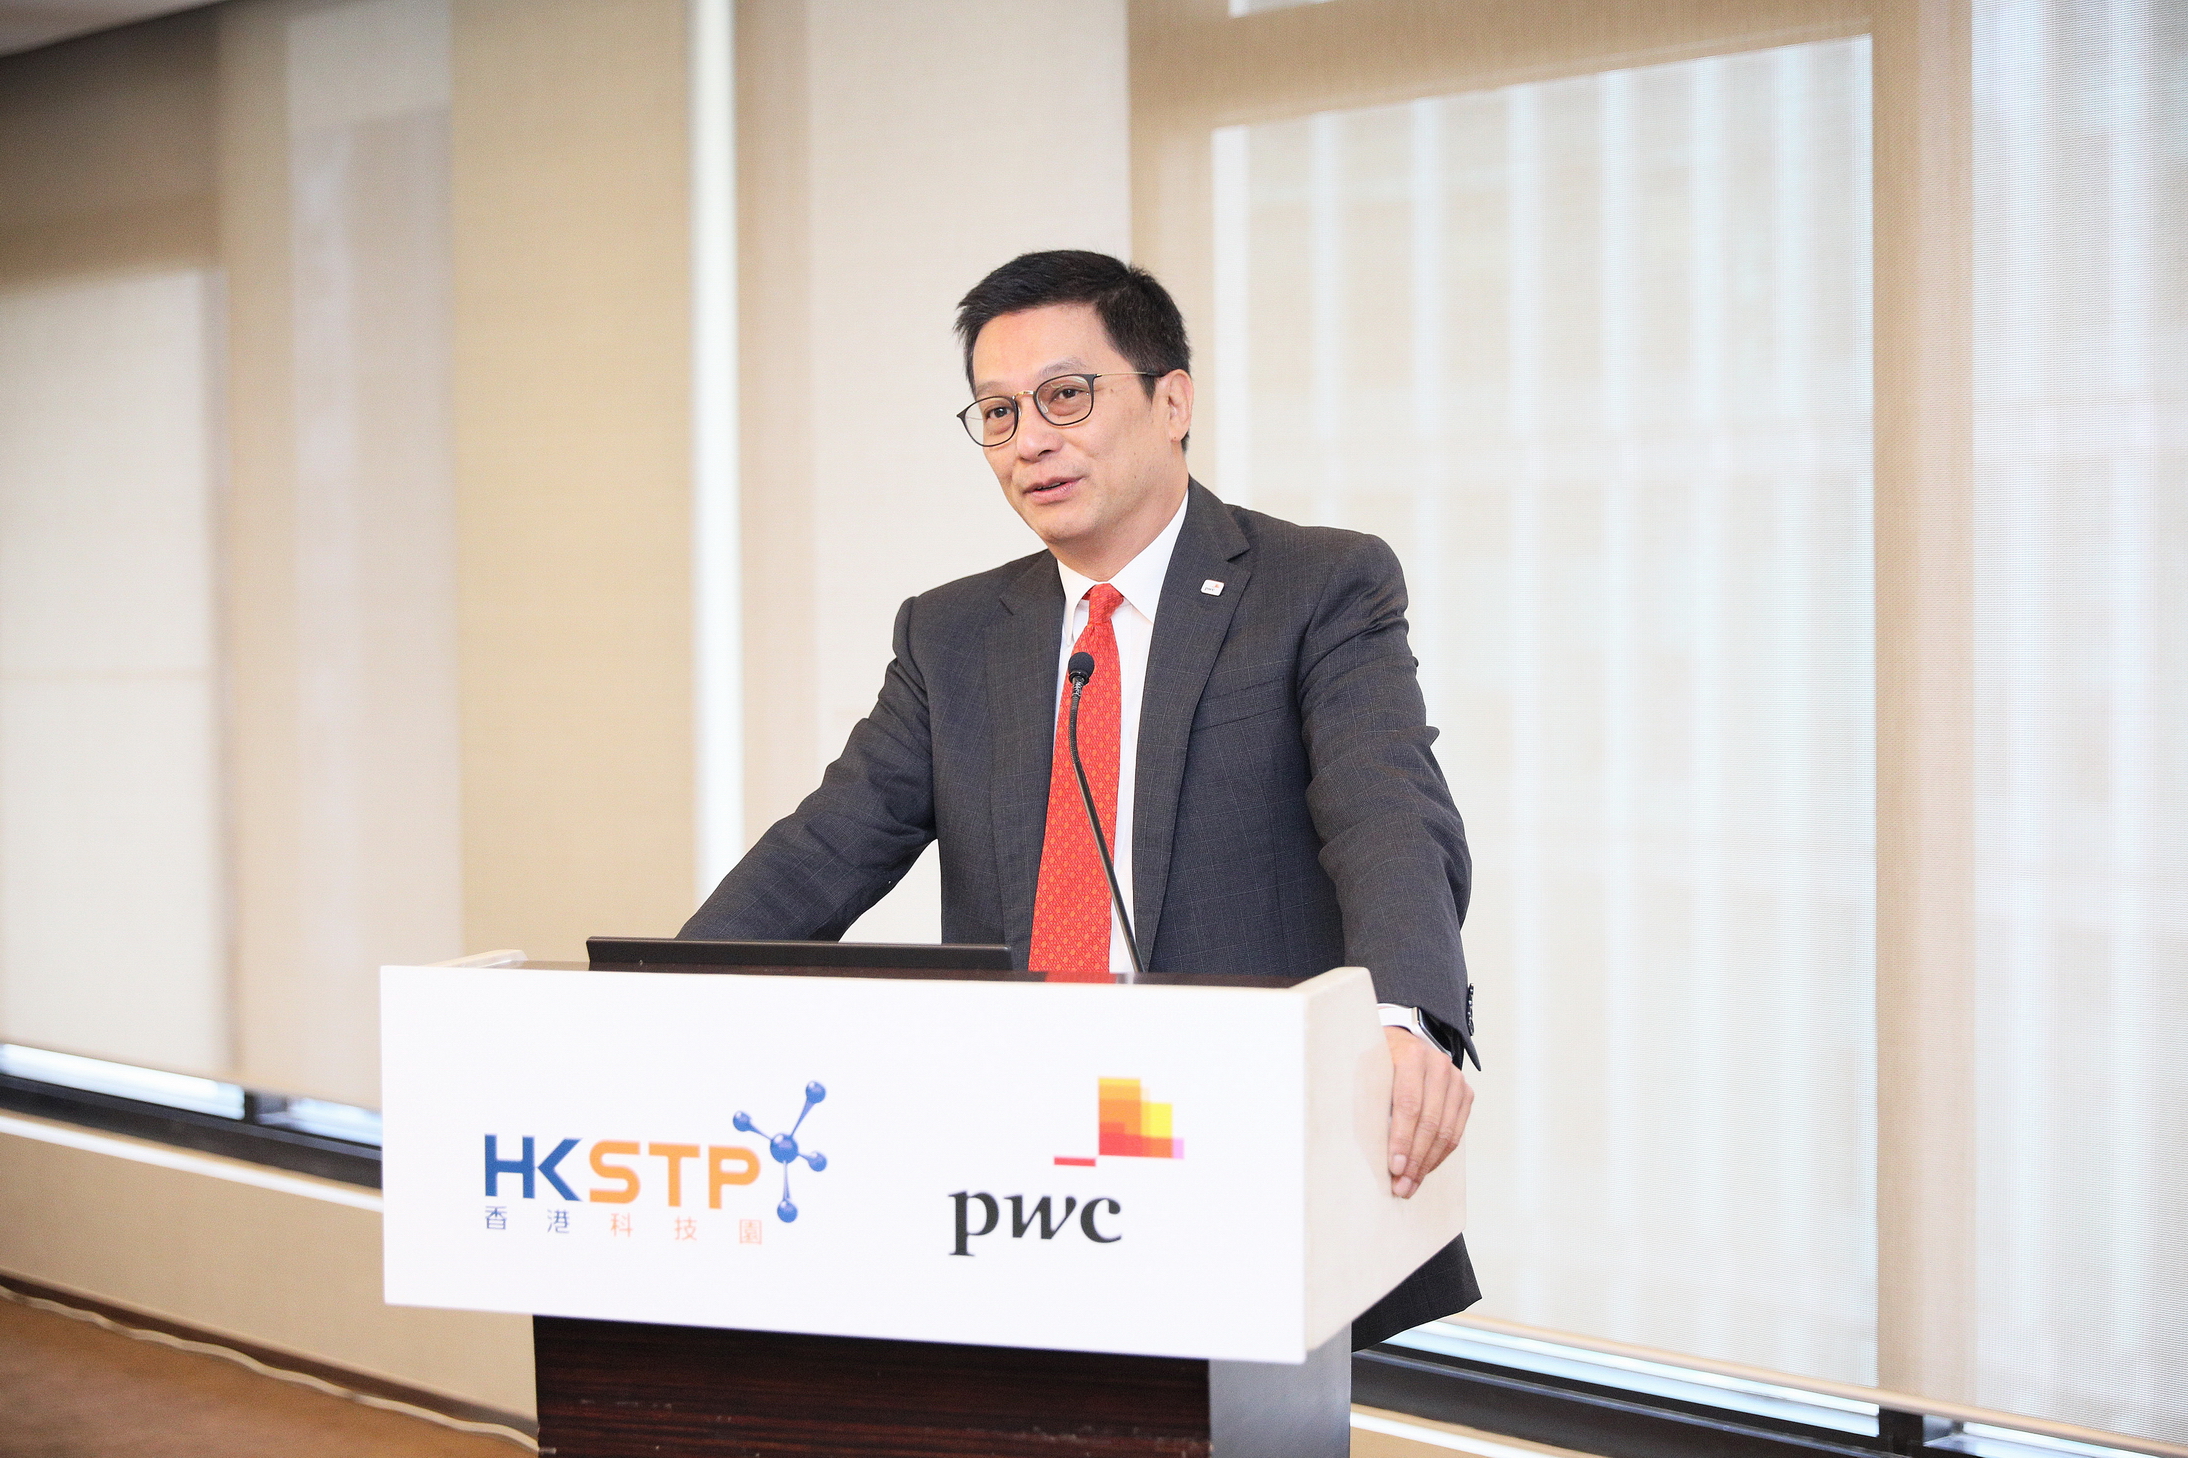 羅兵咸永道亞太及大中華區主席趙柏基表示，希望與科技企業合力創造專業方案，於香港建立蓬勃的創新科技生態圈。